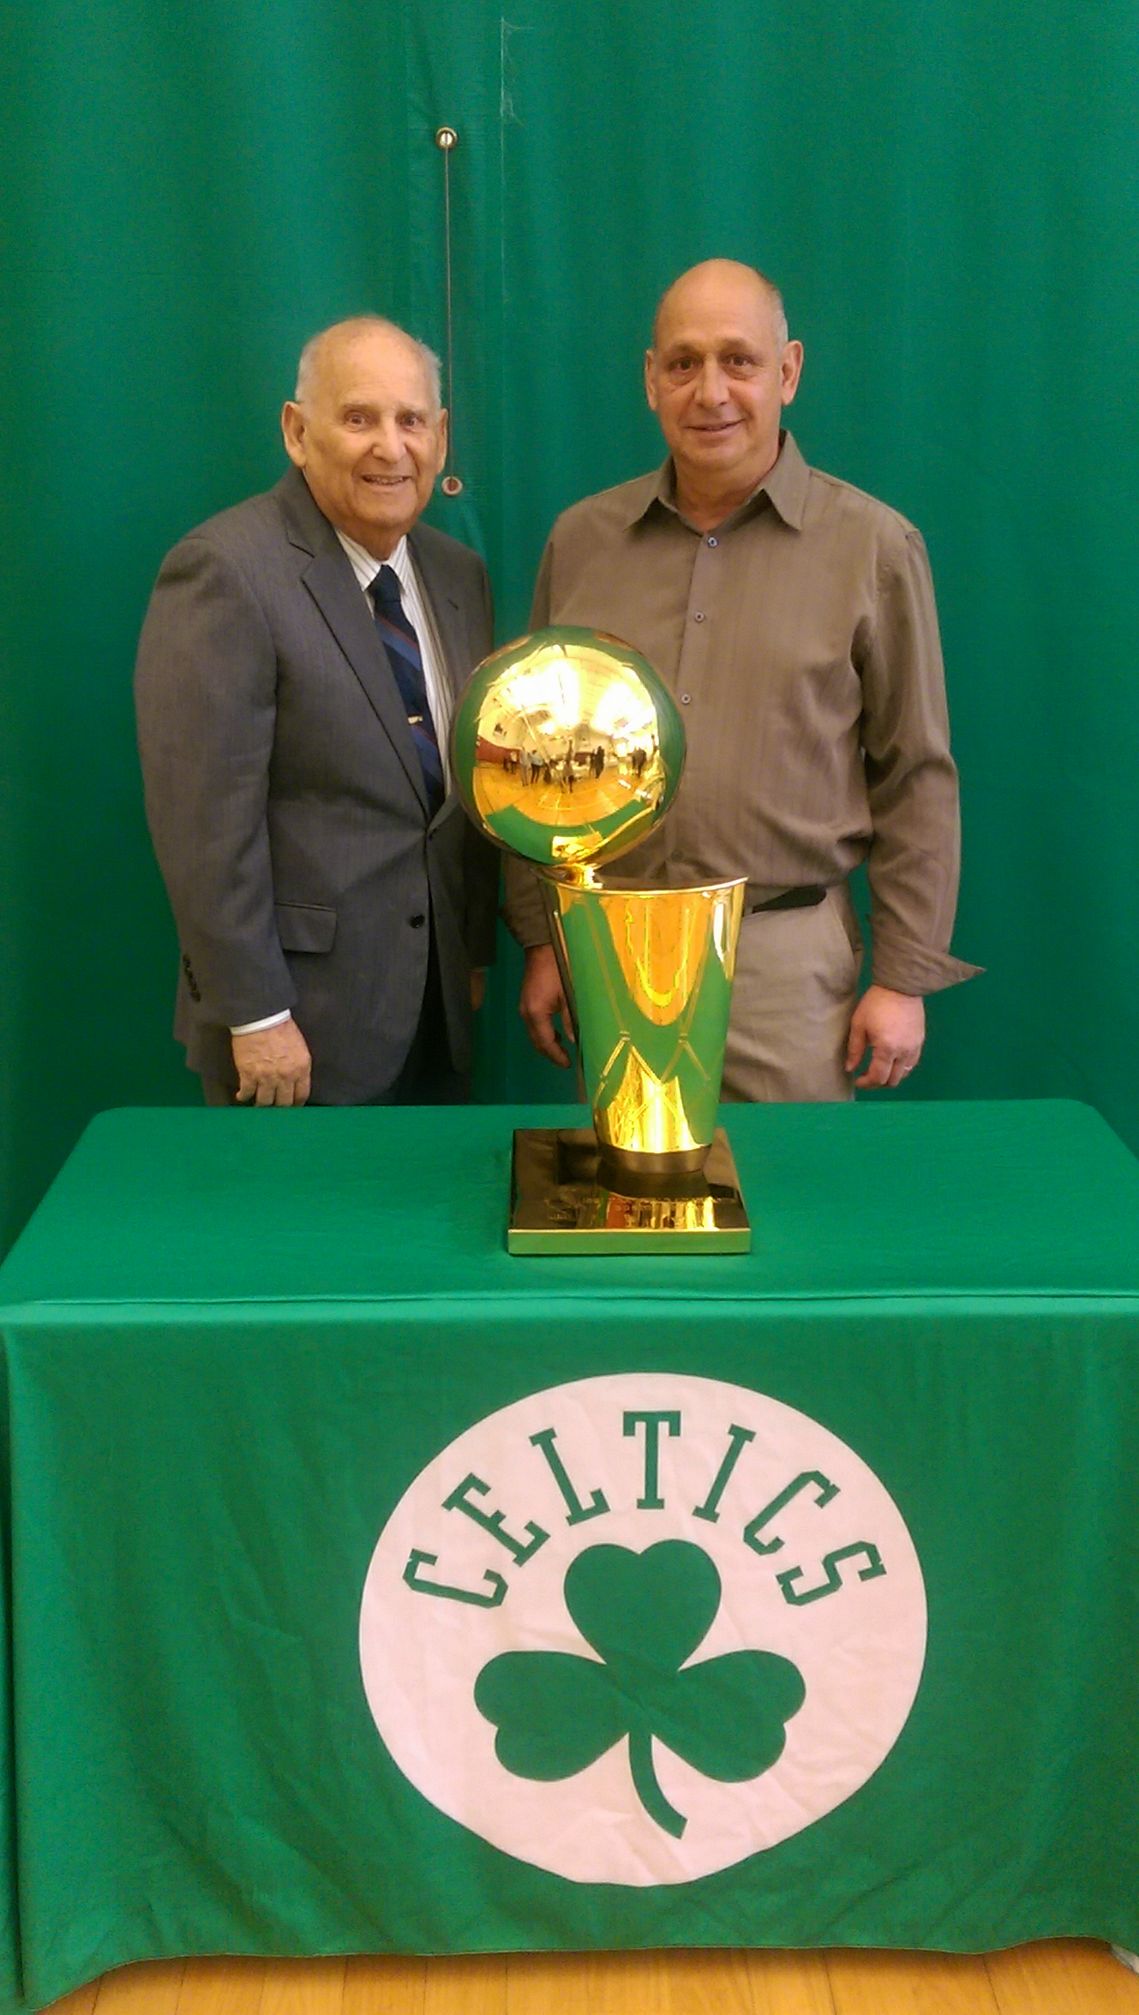 Pat Proia and the Boston Celtics